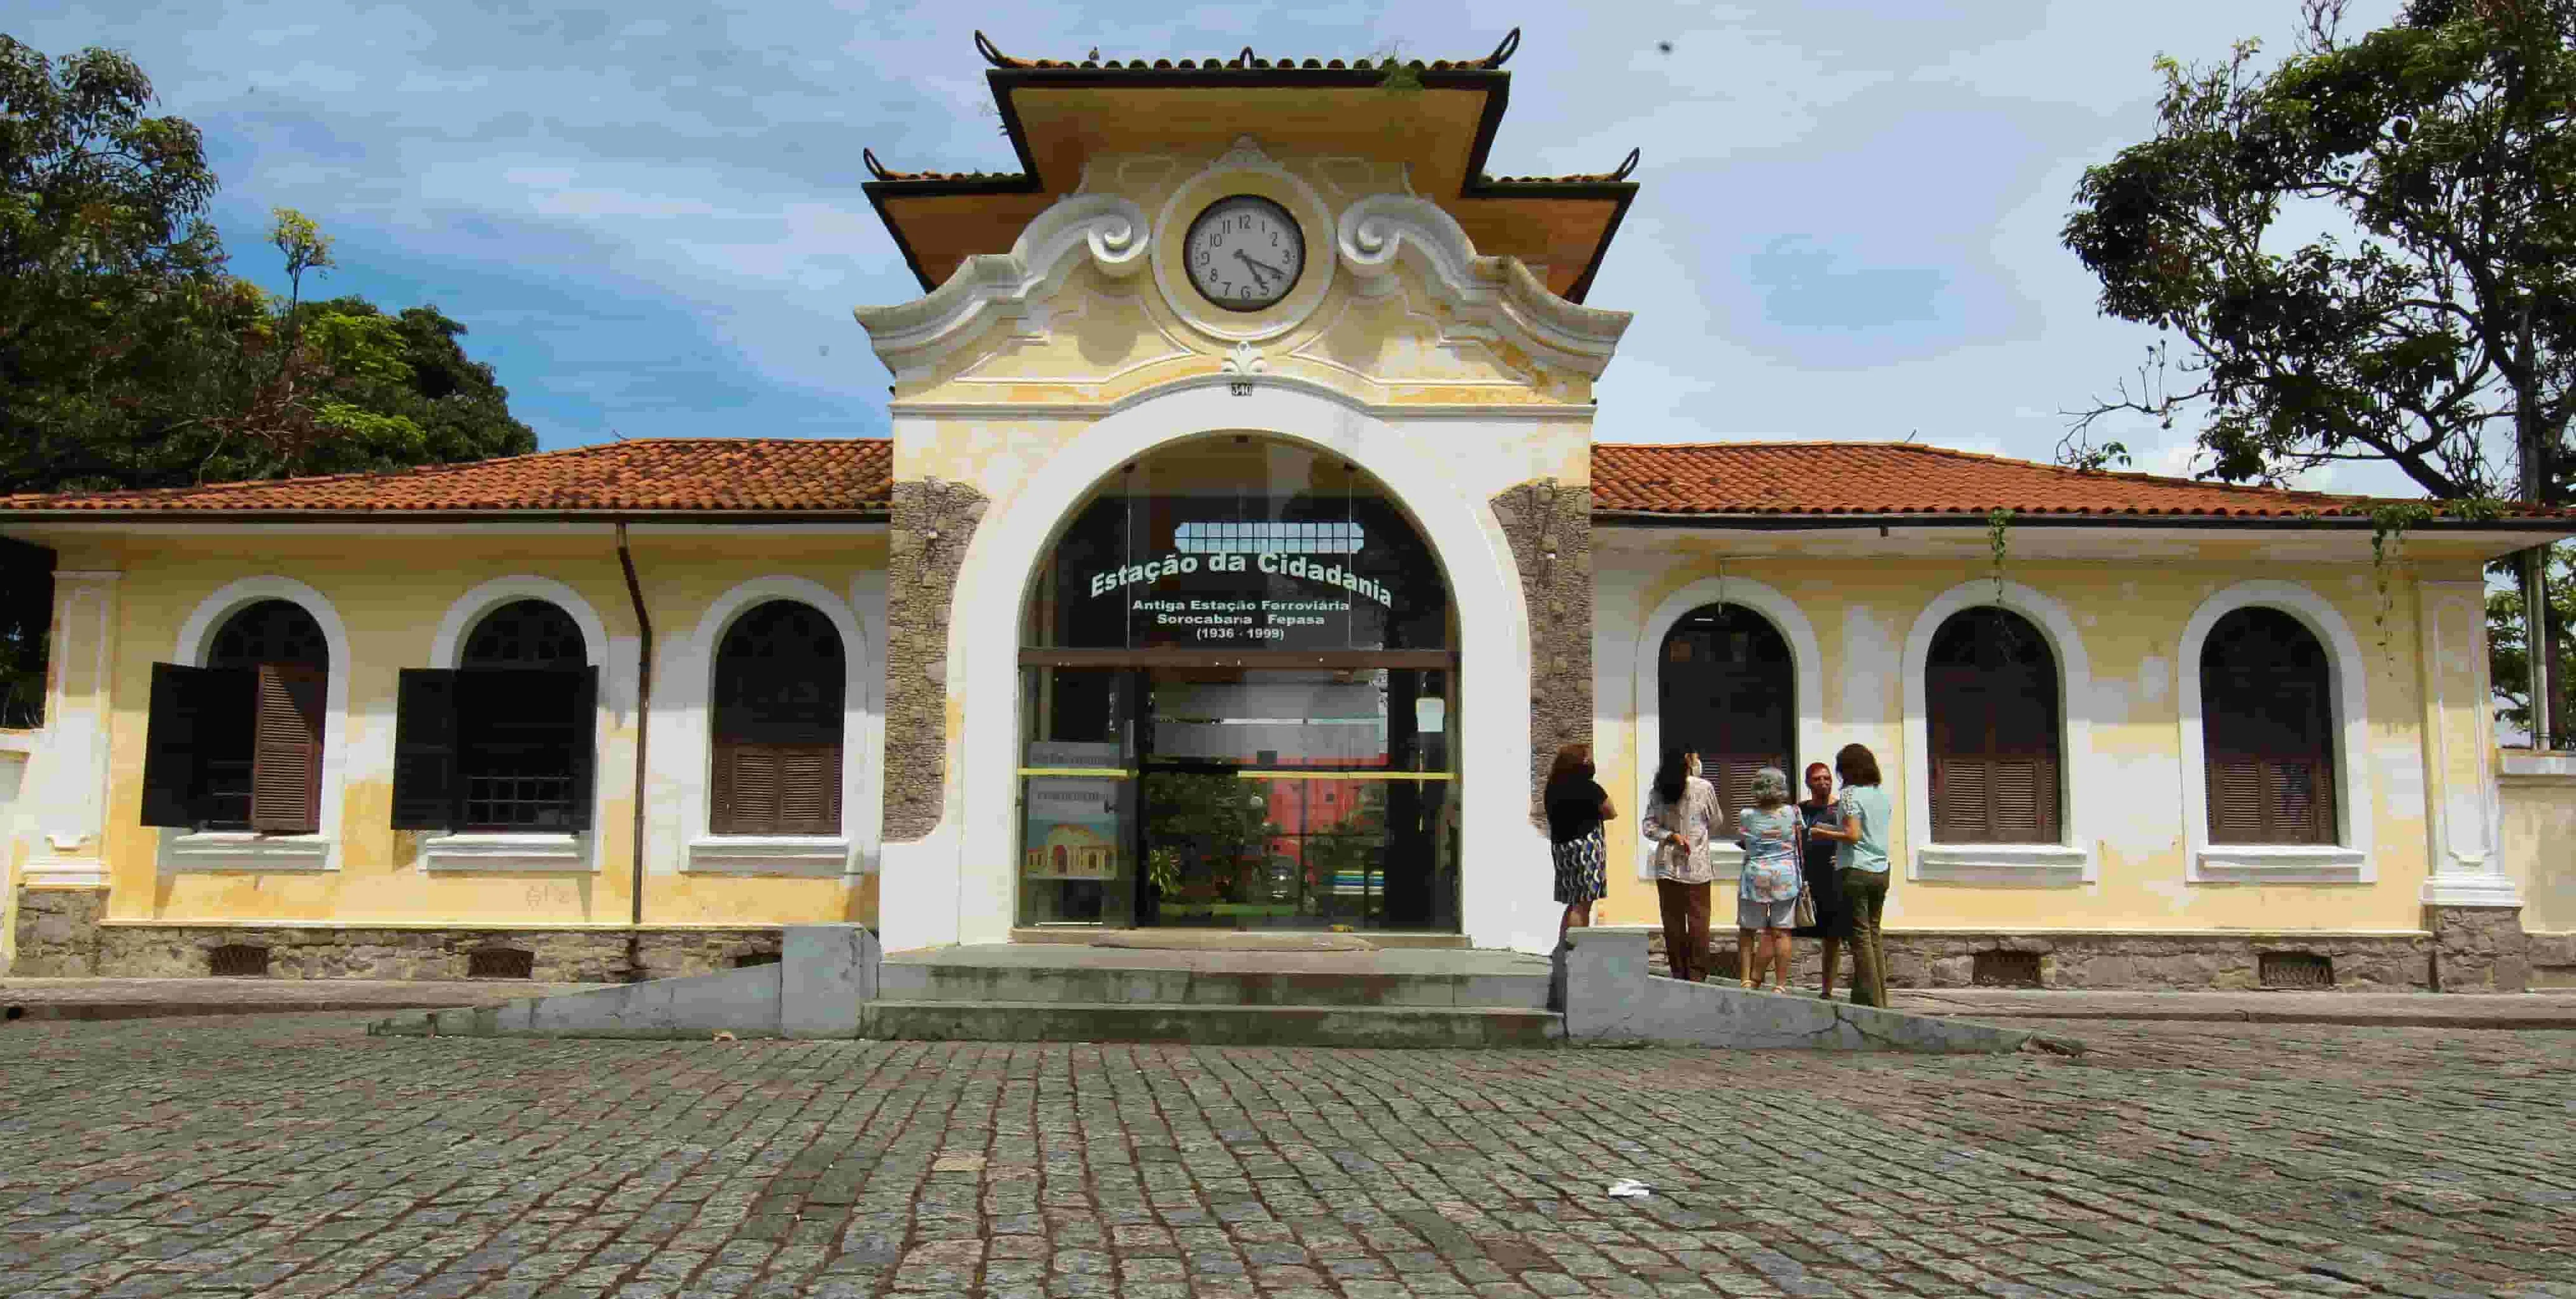  Estação Ferroviária Sorocabana-Fepasa pertence ao Instituto Pão de Açúcar, mas desde 2006 está cedida ao Fórum da Cidadania/Concidadania 